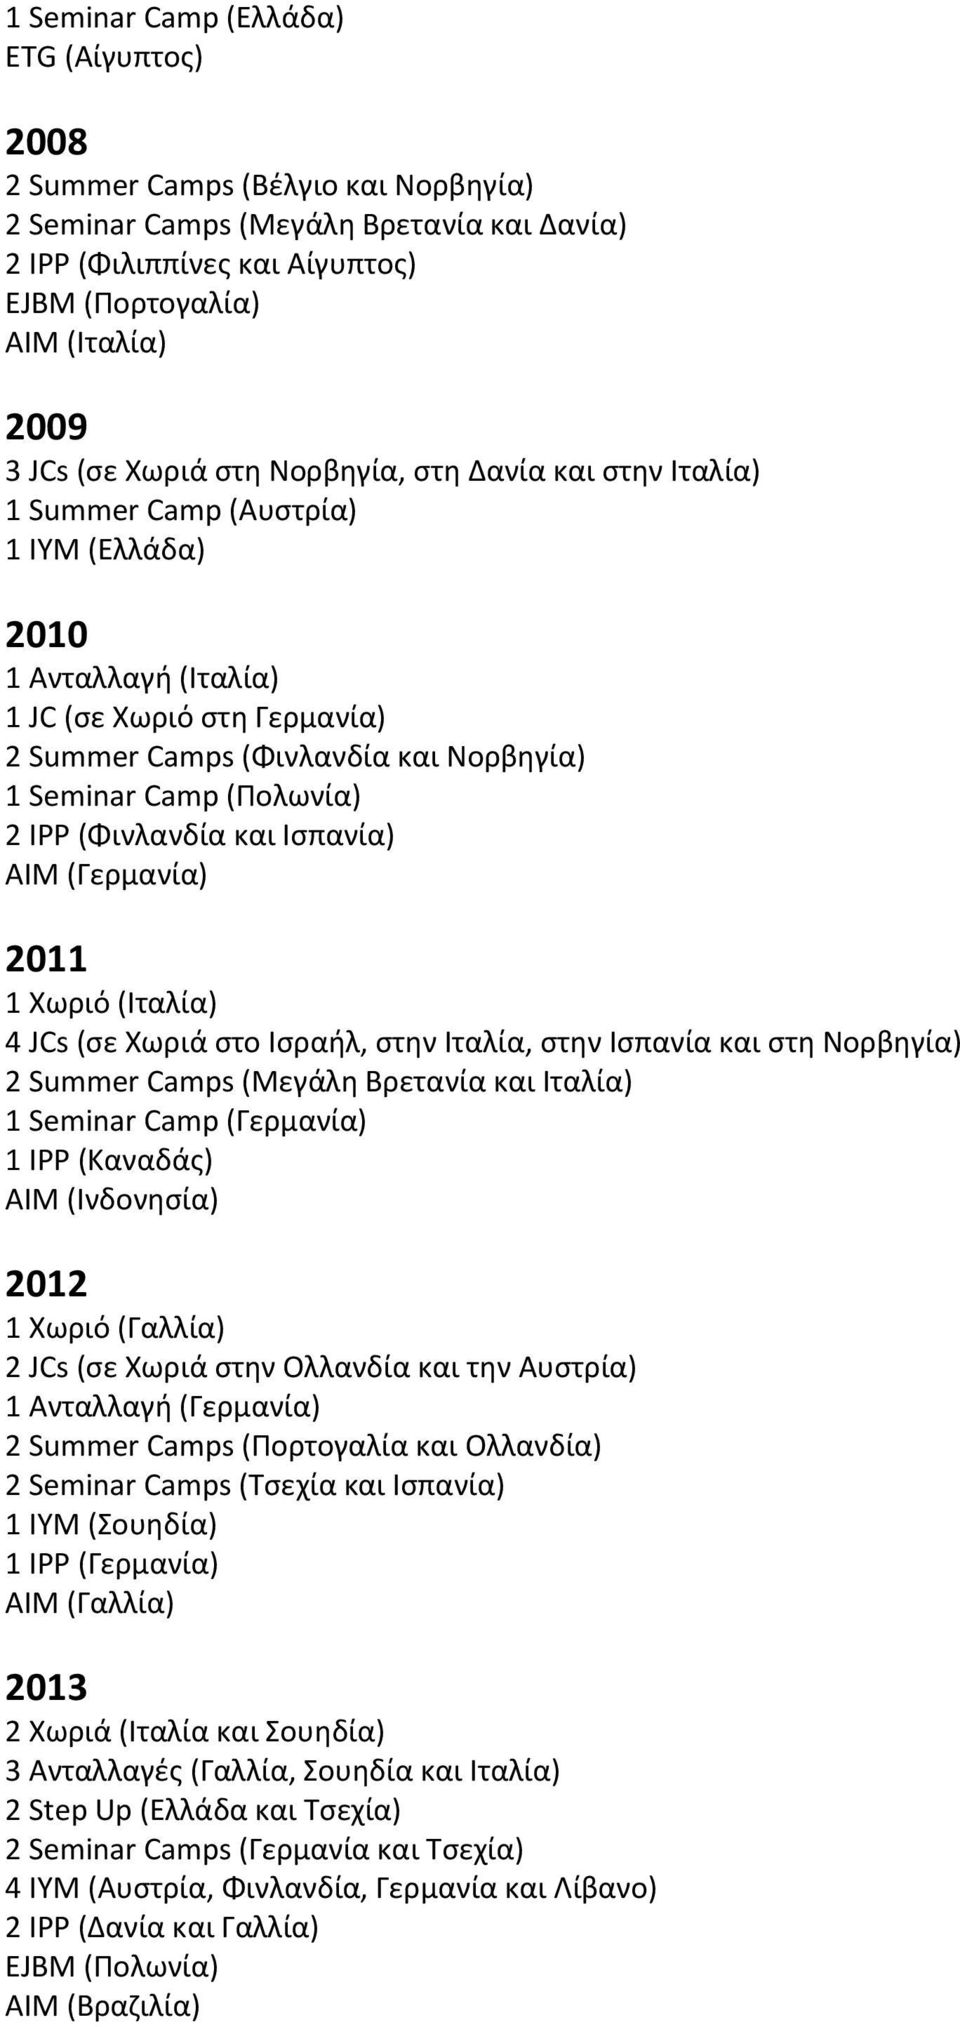 (Πολωνία) 2 IPP (Φινλανδία και Ισπανία) ΑΙΜ (Γερμανία) 2011 1 Χωριό (Ιταλία) 4 JCs (σε Χωριά στο Ισραήλ, στην Ιταλία, στην Ισπανία και στη Νορβηγία) 2 Summer Camps (Μεγάλη Βρετανία και Ιταλία) 1 IPP